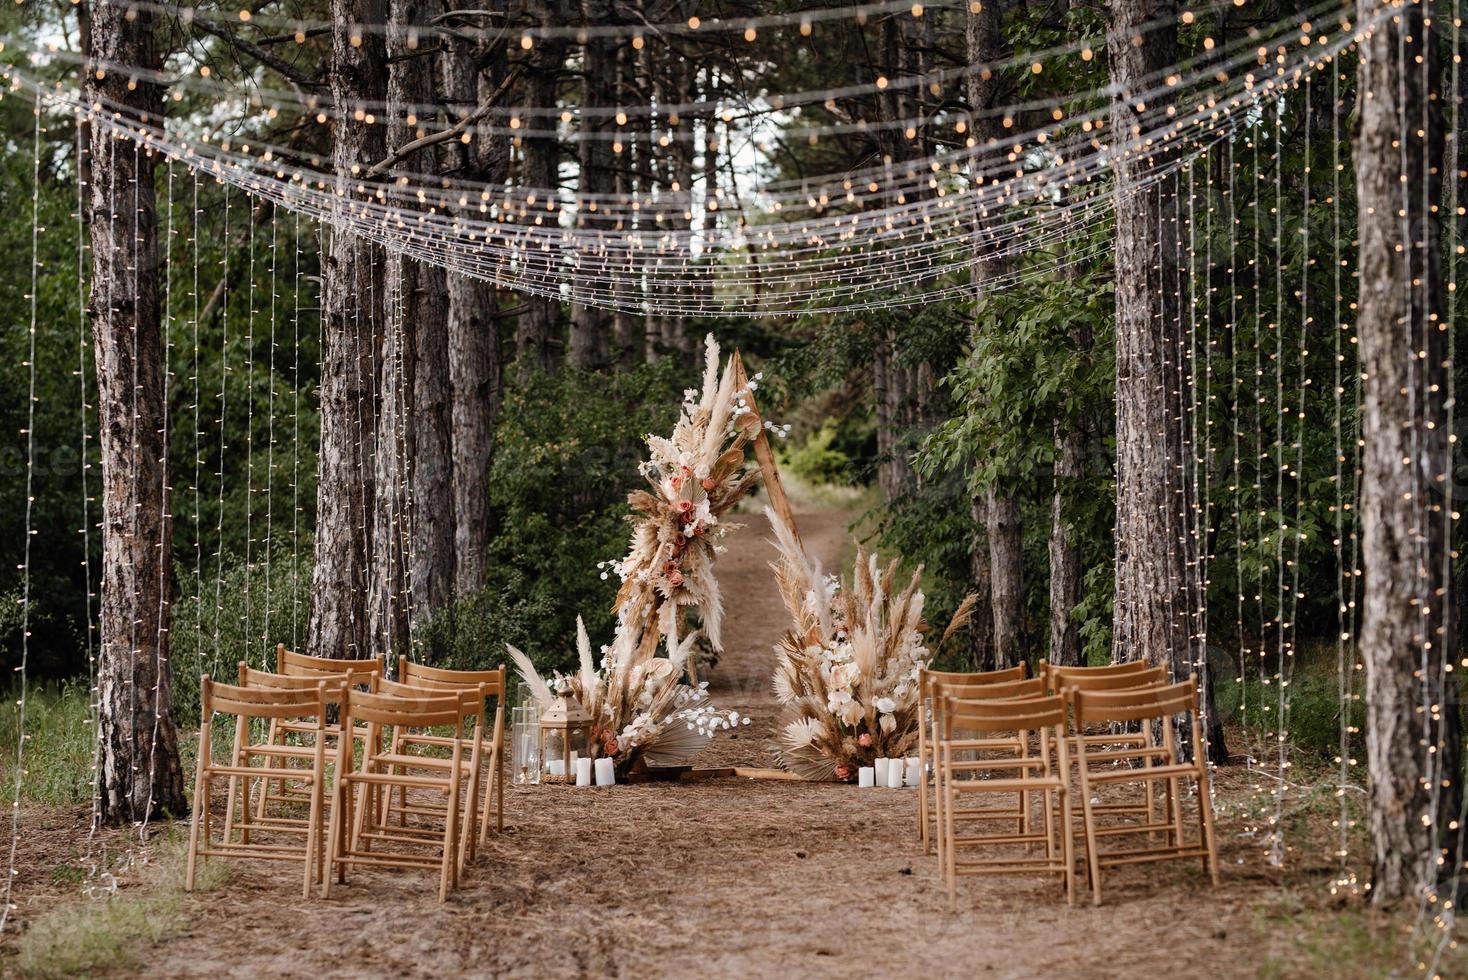 huwelijksceremonie gebied met gedroogde bloemen in een weiland in een dennenbos foto